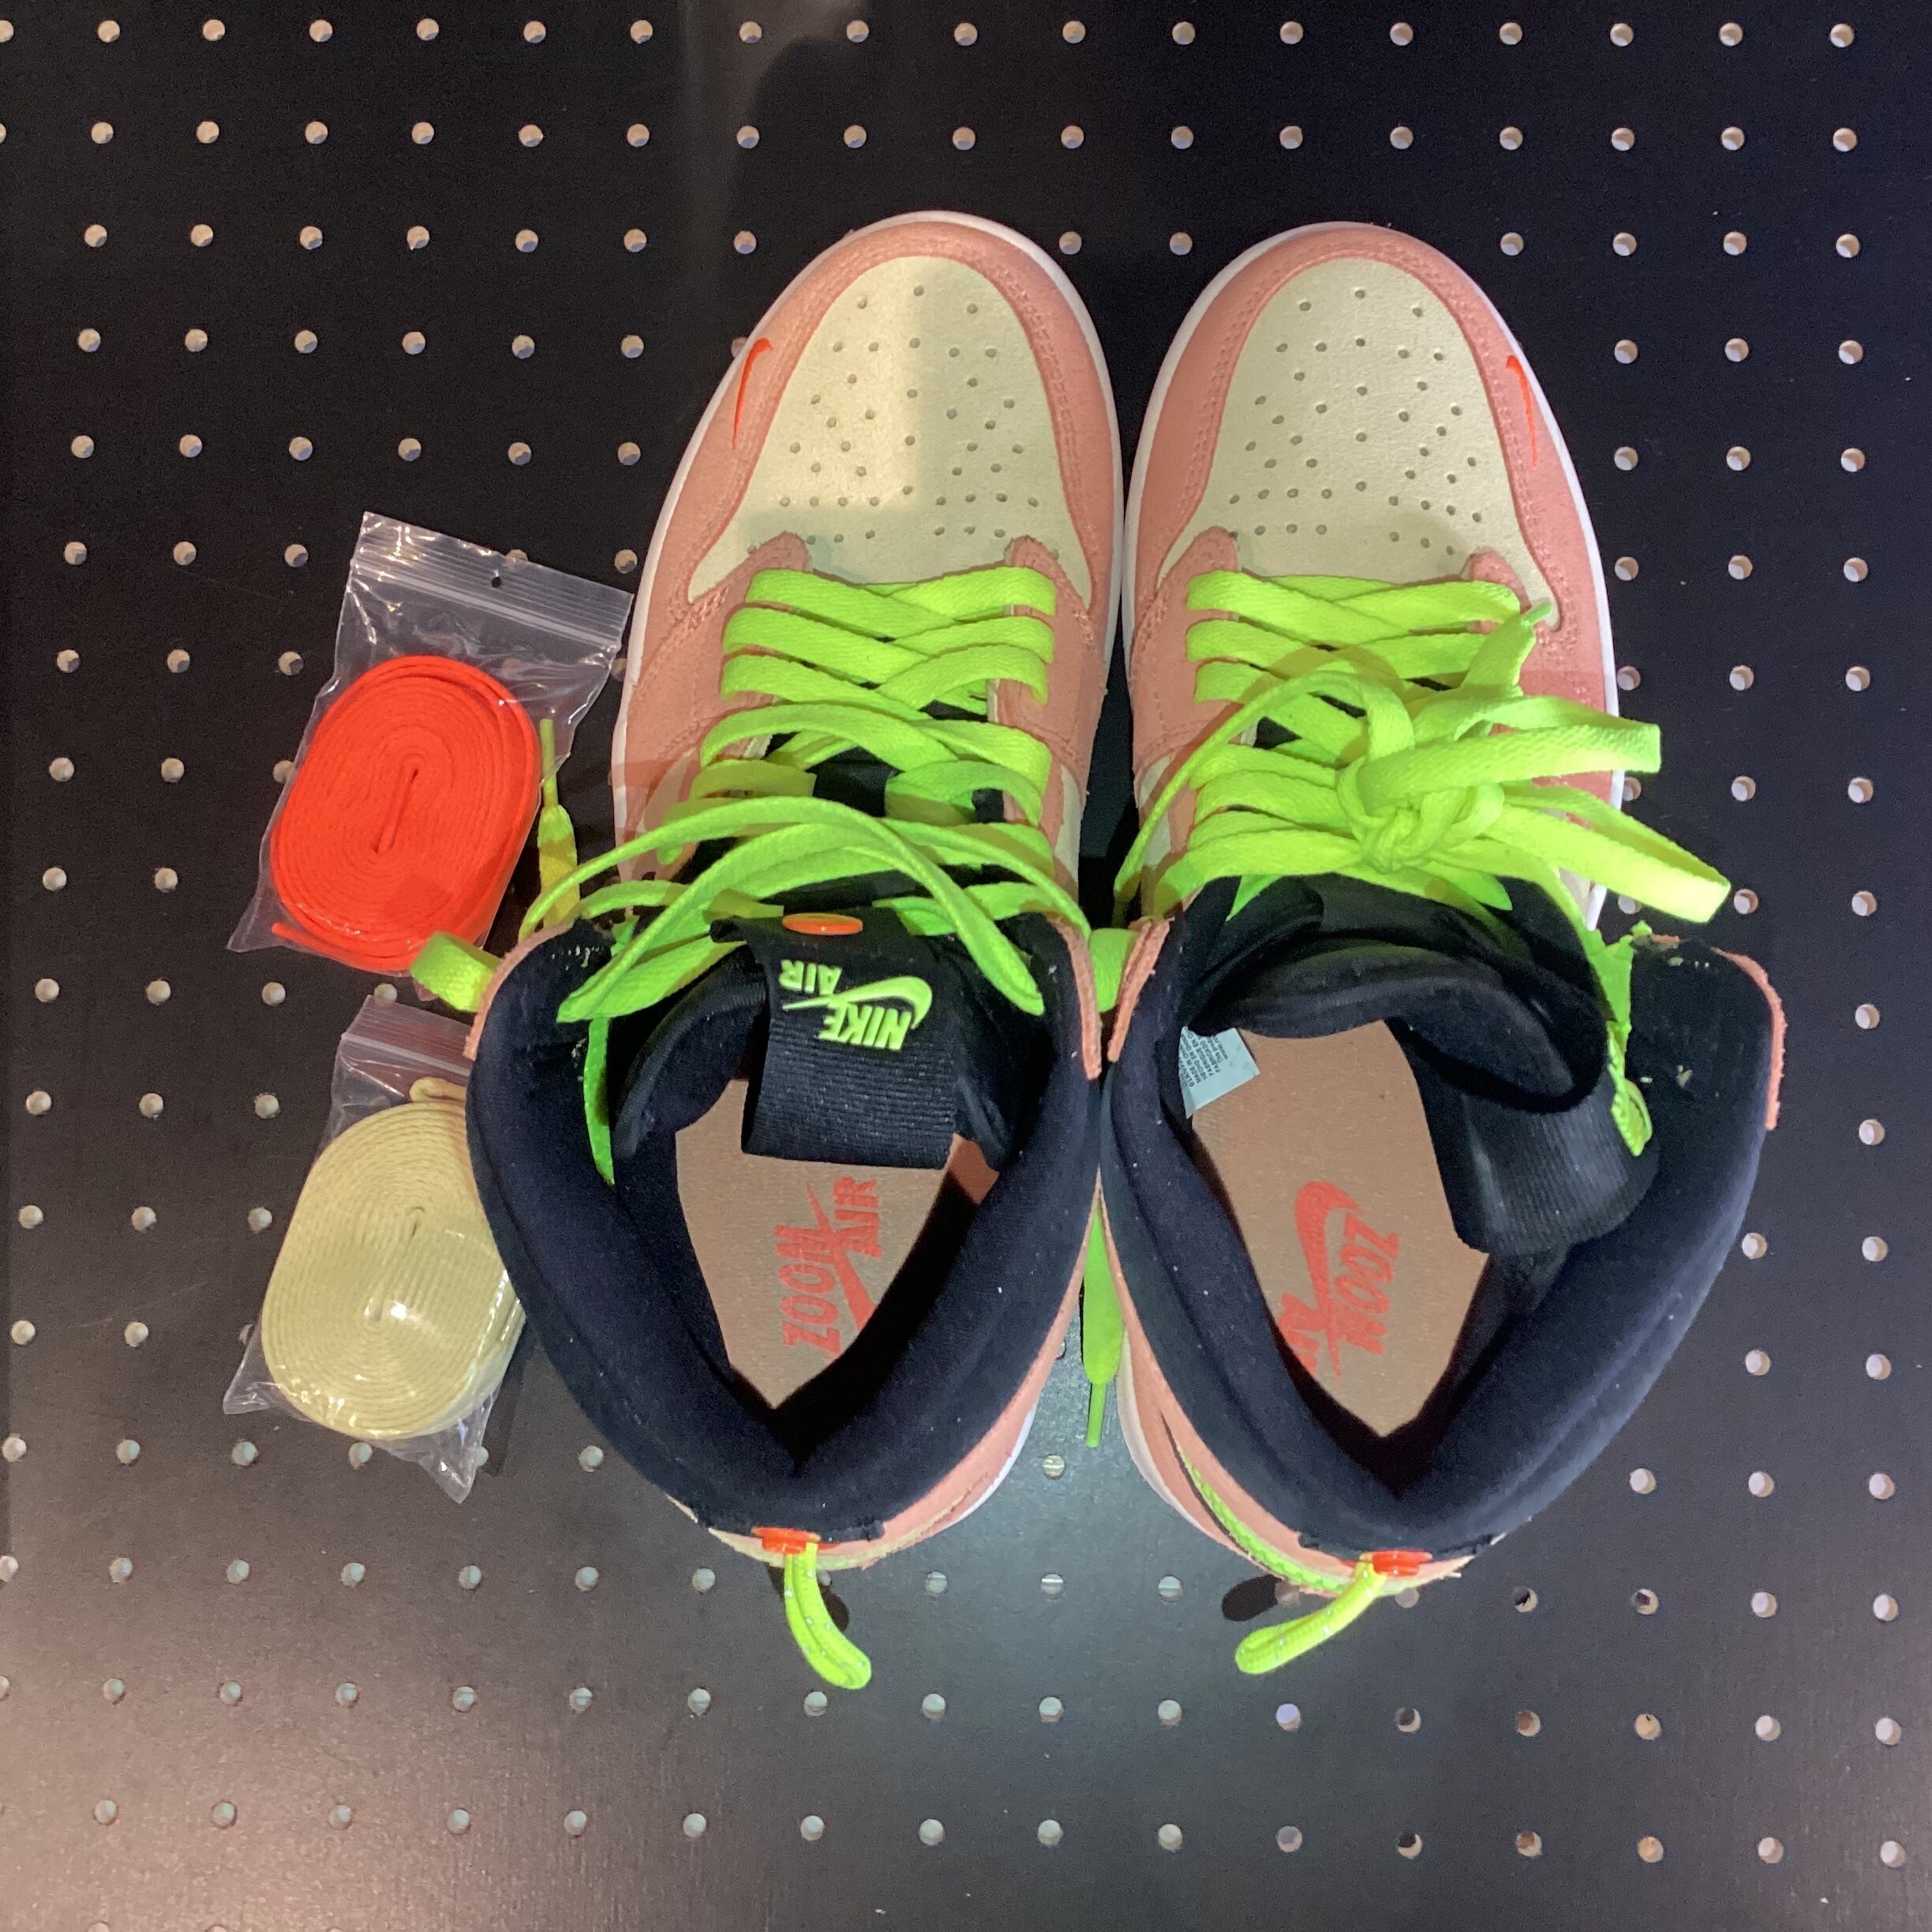 Nike Air Jordan 1 High Switch "Peach And Neon" US8.5/26.5cm